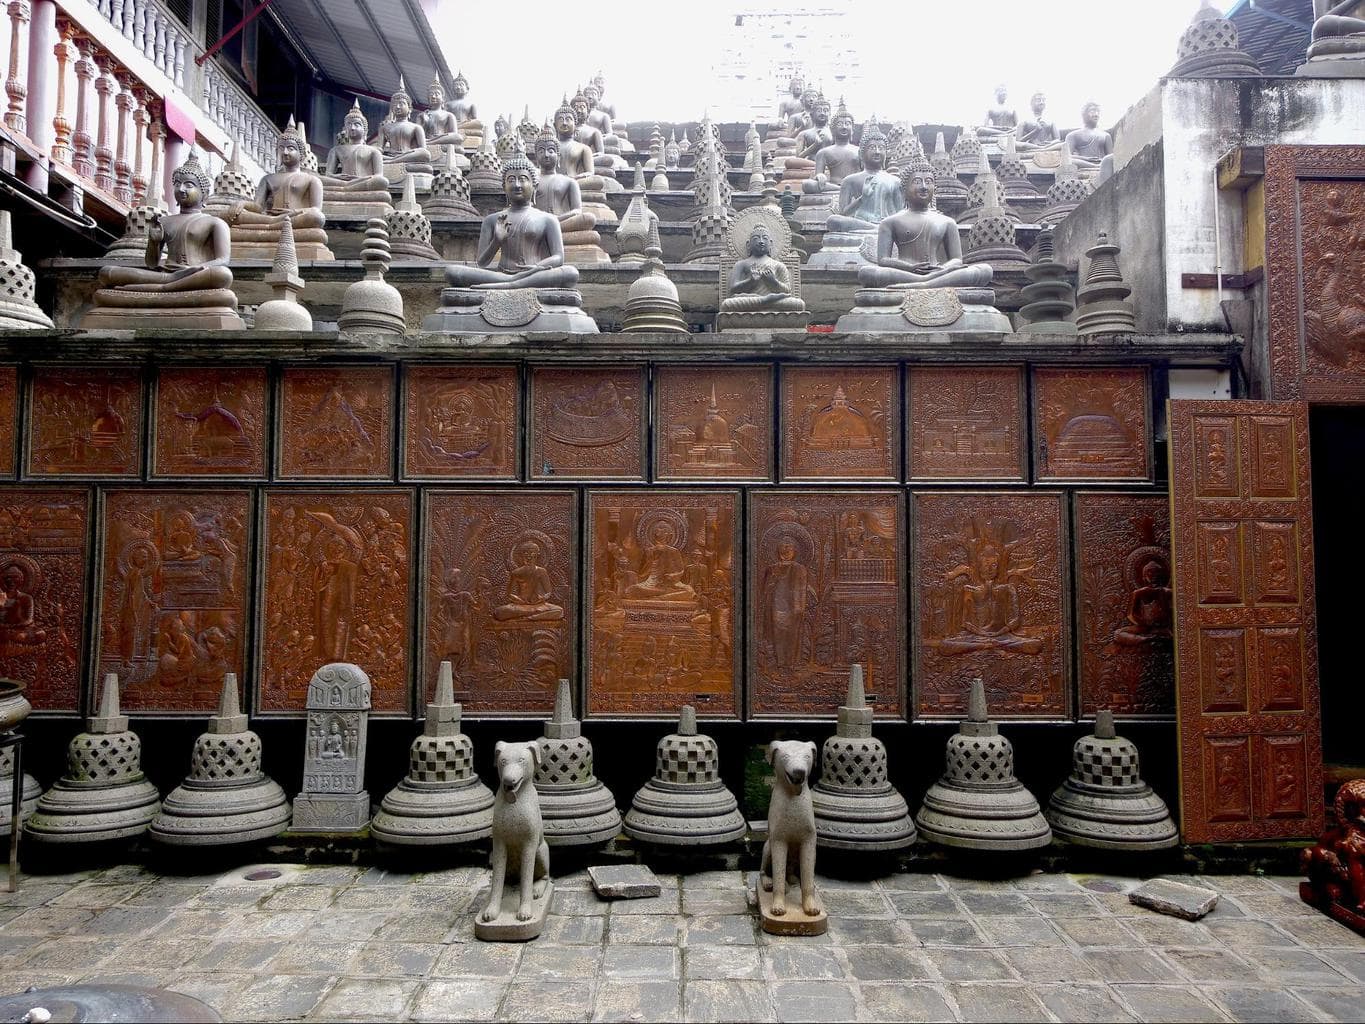 Replica of Borobudur Temple